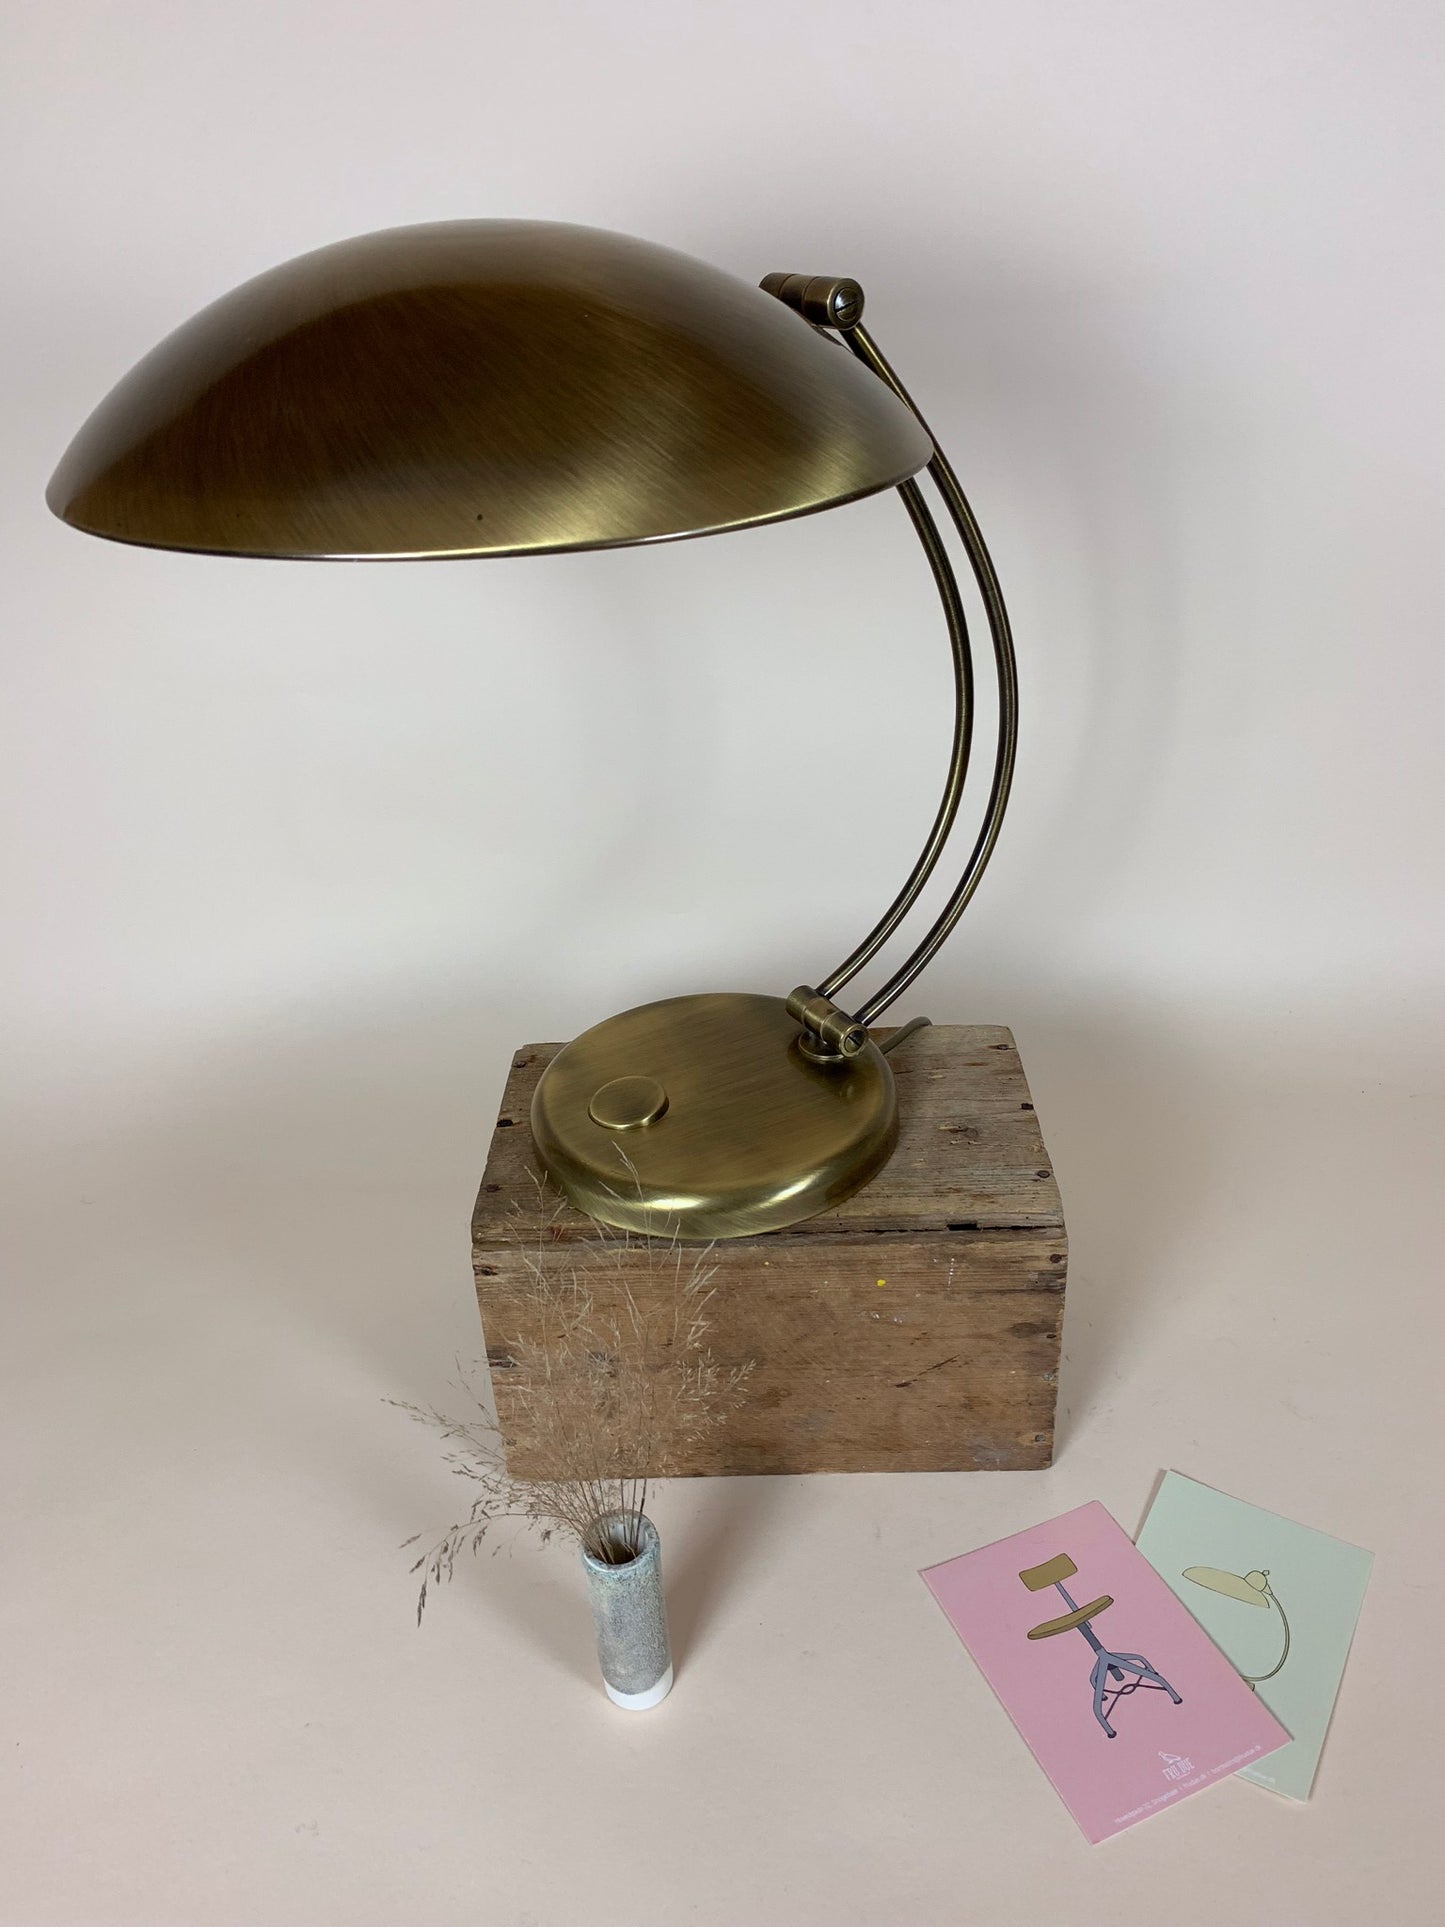 Hillebrand lampa från ca 1950 - Sällsynt exempel